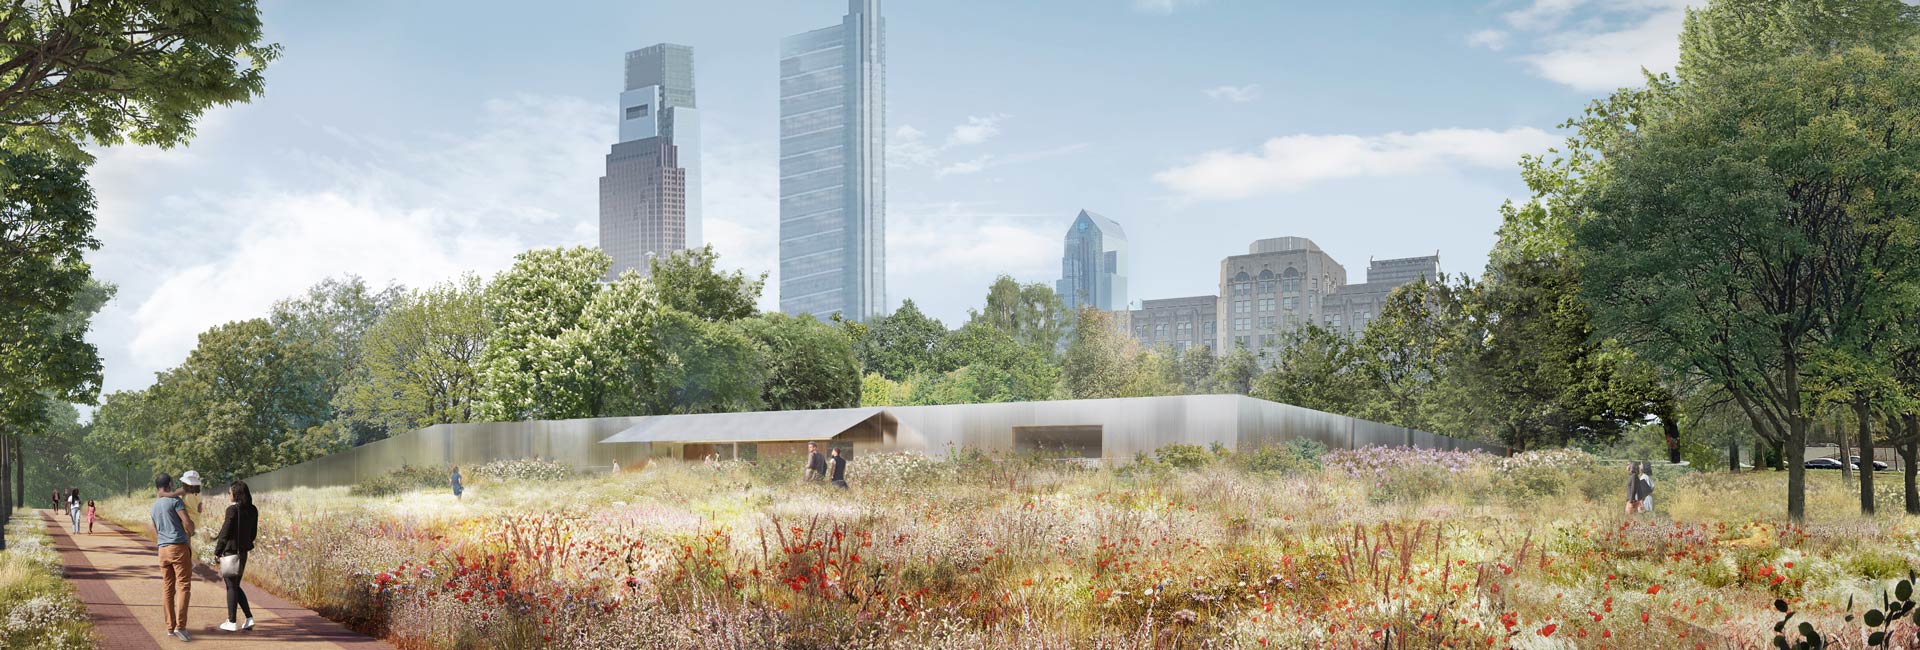 A rendering of the new Calder Gardens in Philadelphia.